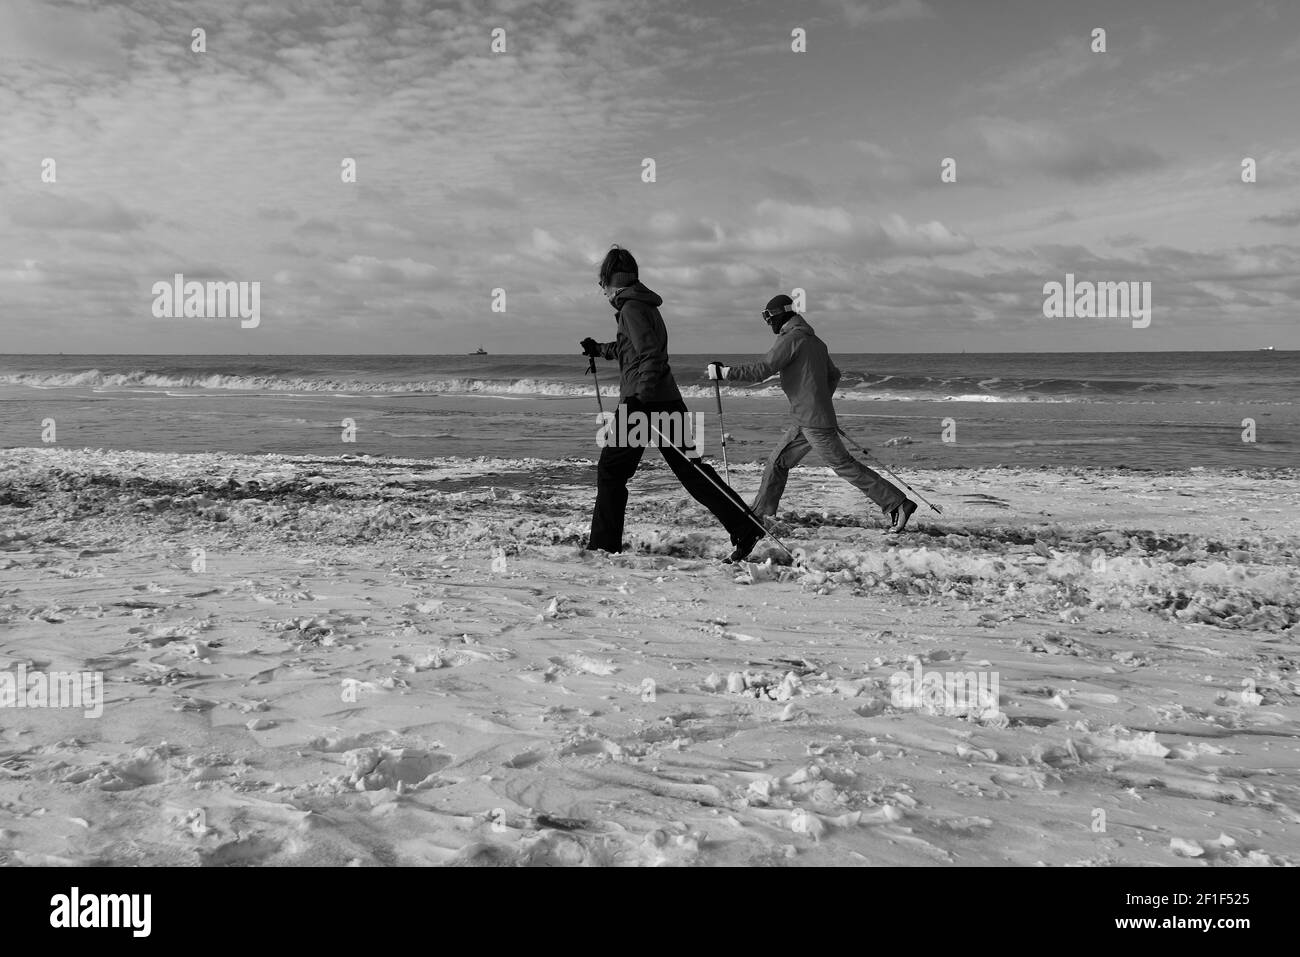 Deux personnes skient sur la plage après de fortes chutes de neige dans le pays. Banque D'Images